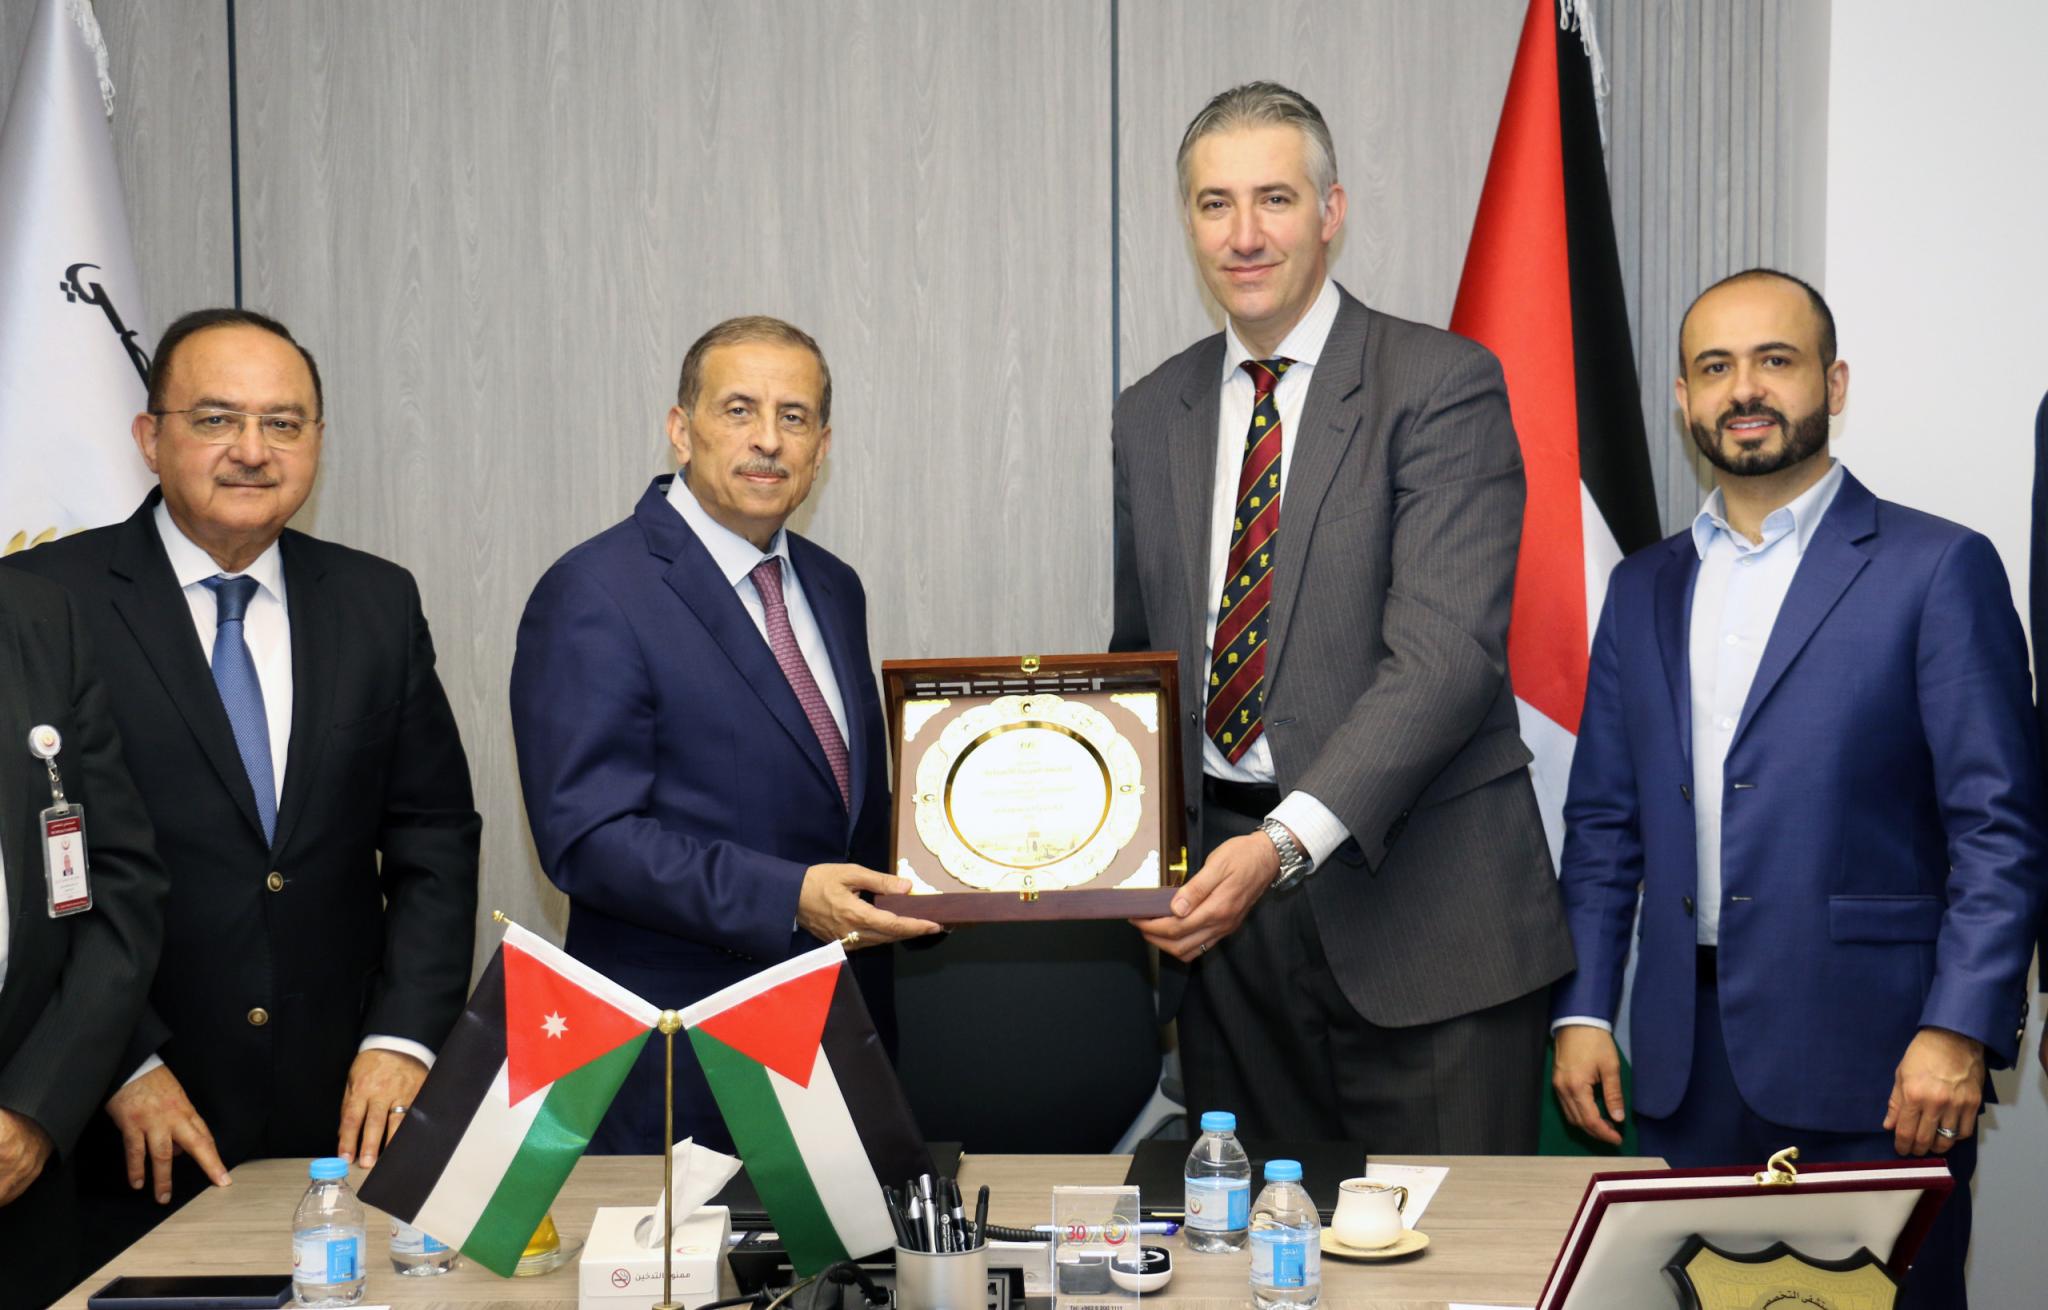 الجامعة العربية الأمريكية في فلسطين والمستشفى التخصصي في الأردن يوقعان اتفاقية تعاون